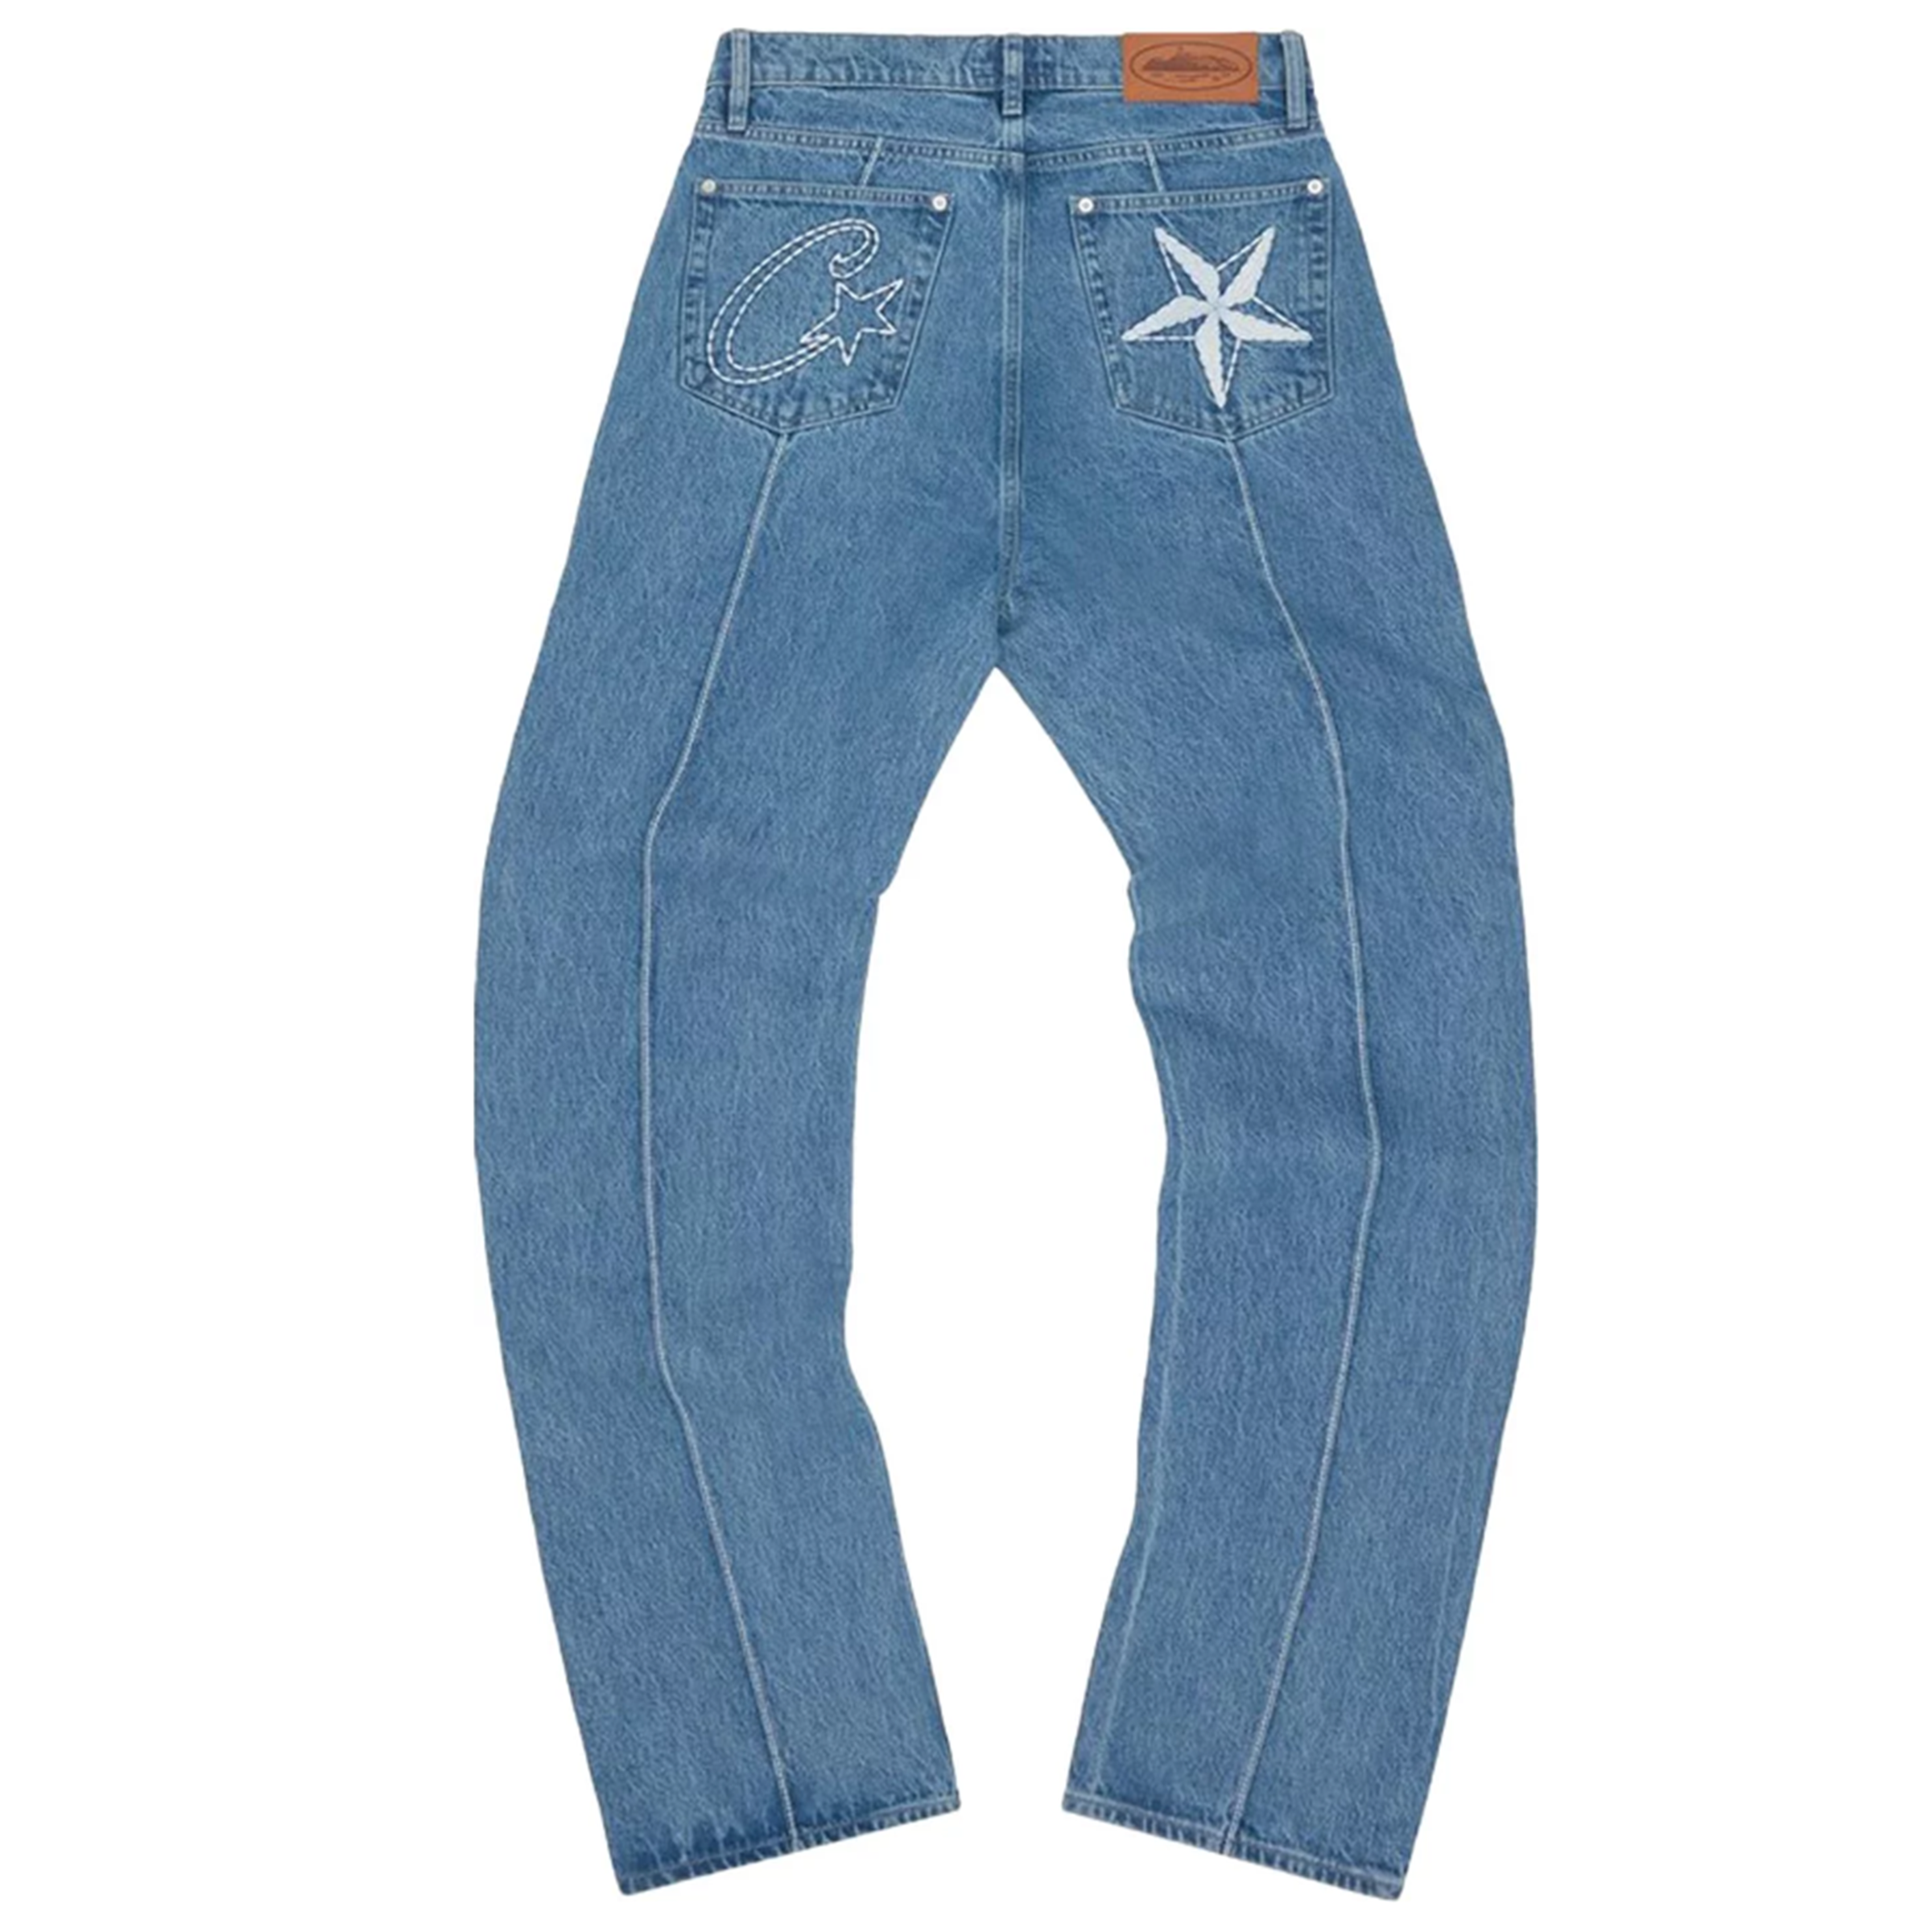 Corteiz "C-Star" Blue Denim Jeans